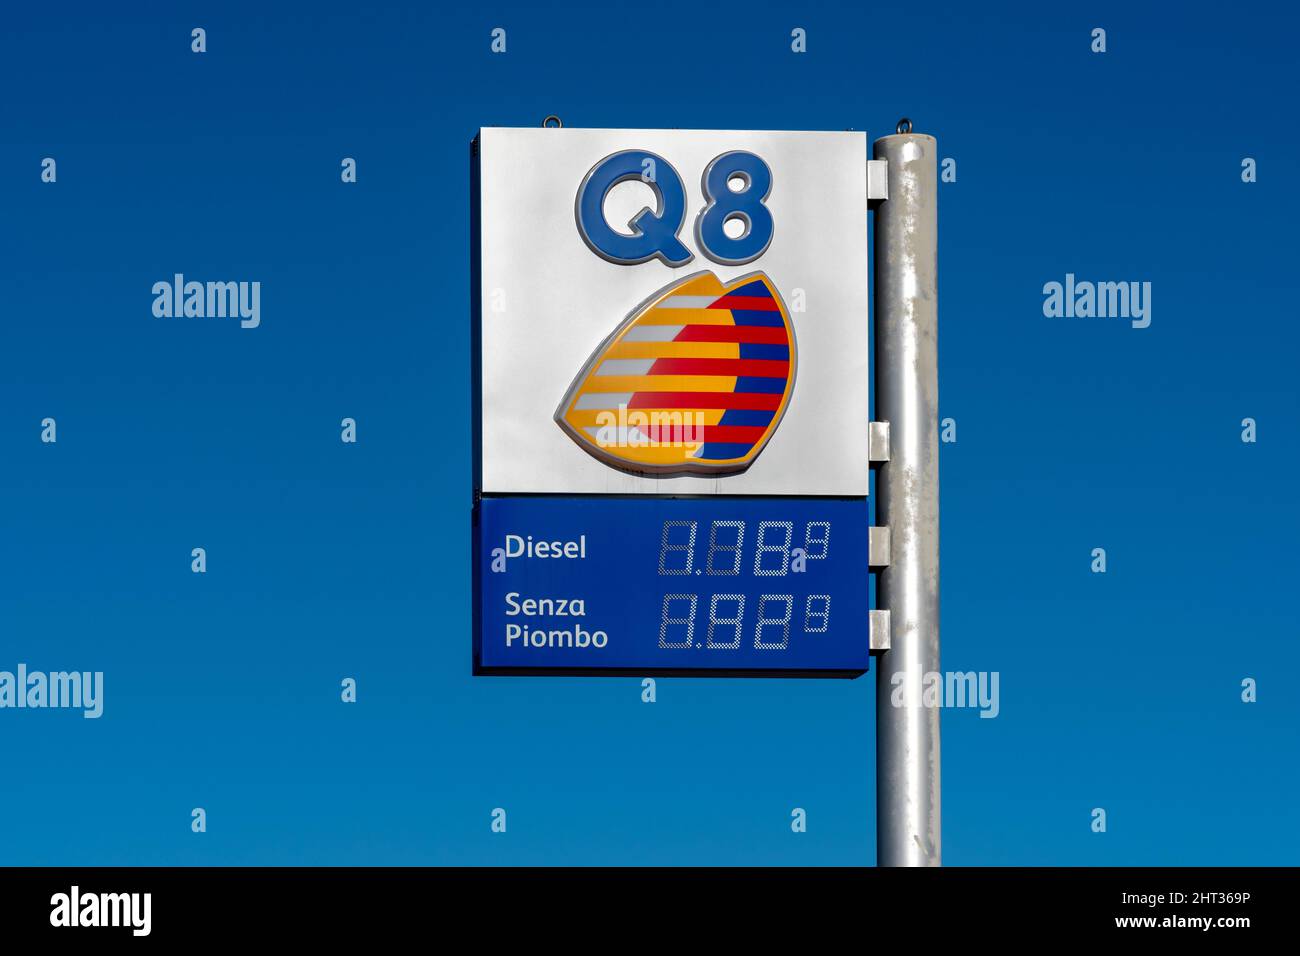 Fossano, Italie - 26 février 2022: Q8 logo avec fuel Euro prix affiché sur station-service sur ciel bleu, c'est la marque de Kuwait Petroleum Internationa Banque D'Images